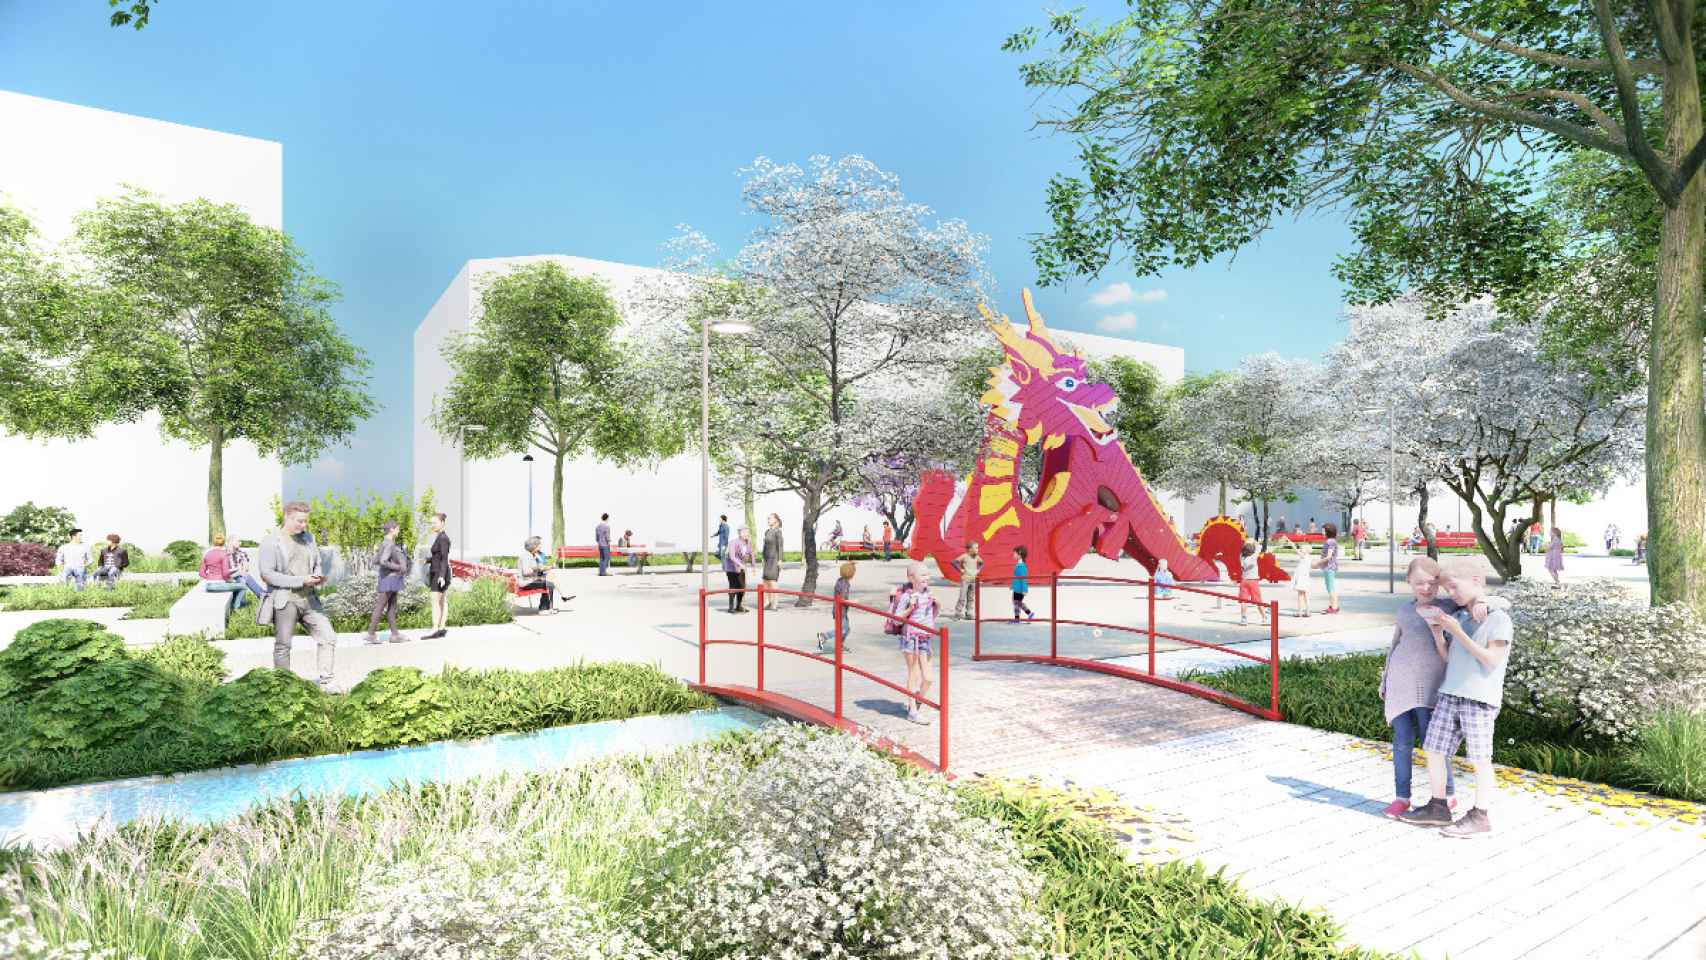 Imagen virtual de la futura Plaza de las Tizas de Usera, que formará parte del Chinatown de Madrid